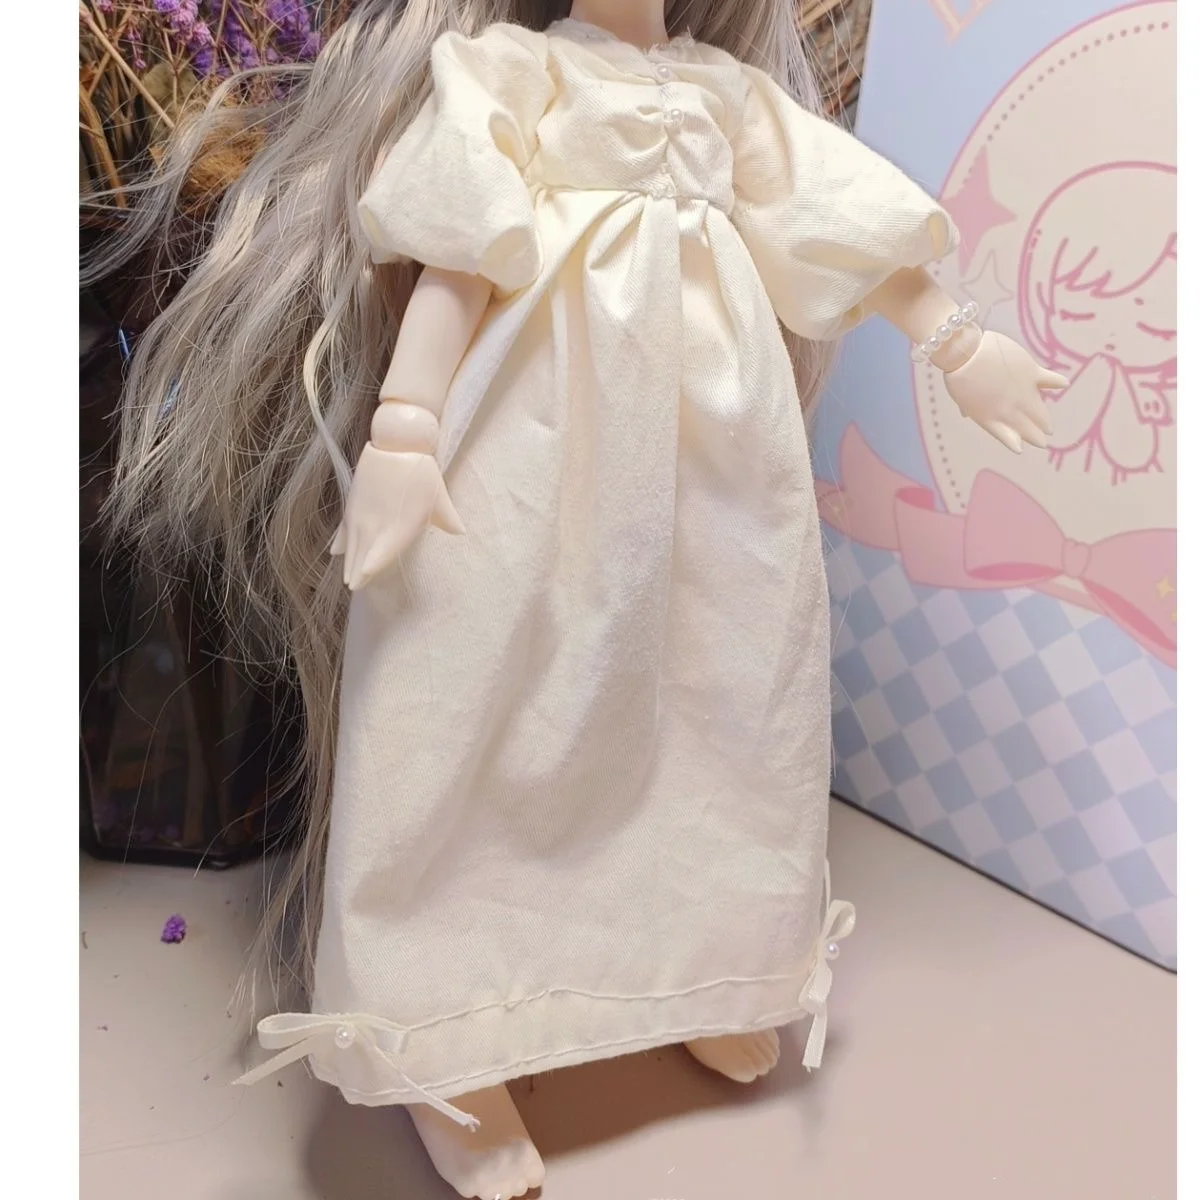 Новый стиль, одежда для куклы 1/6 BJD, оригинальная пижама в придворном стиле, комплект розового платья принцессы